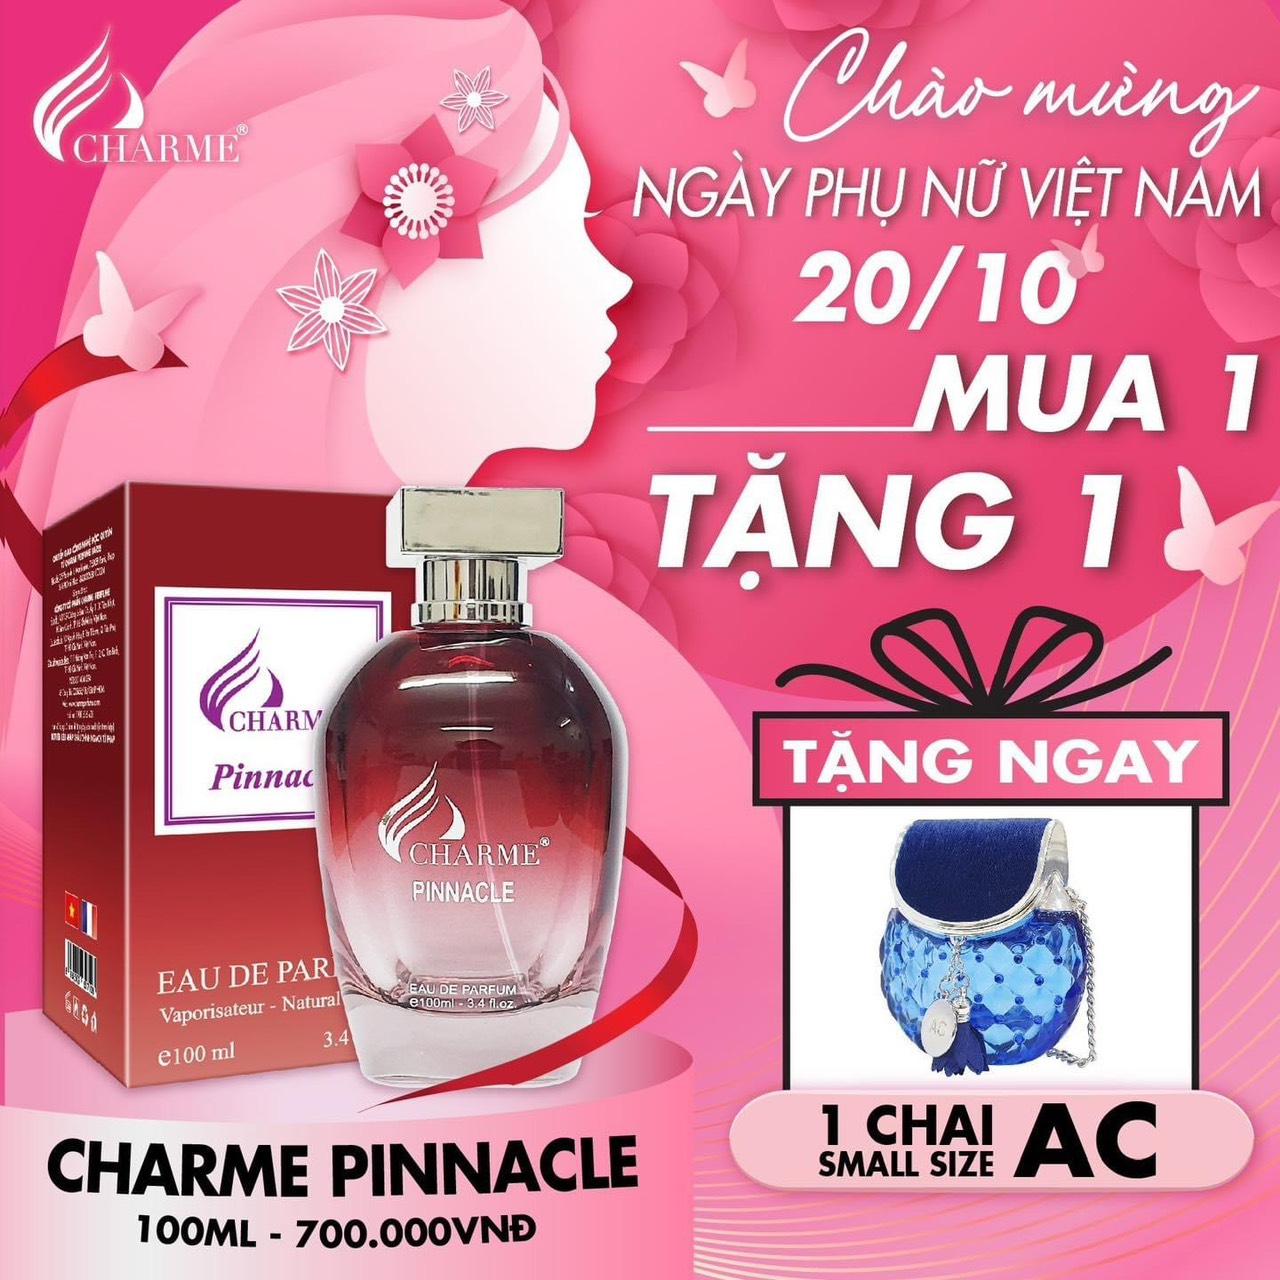 Deal thơm nhất năm lại thêm quà ngọt bão sale mừng ngày phụ nữ Việt Nam 20/10 chính thức đổ bộ tại Charme Perfume